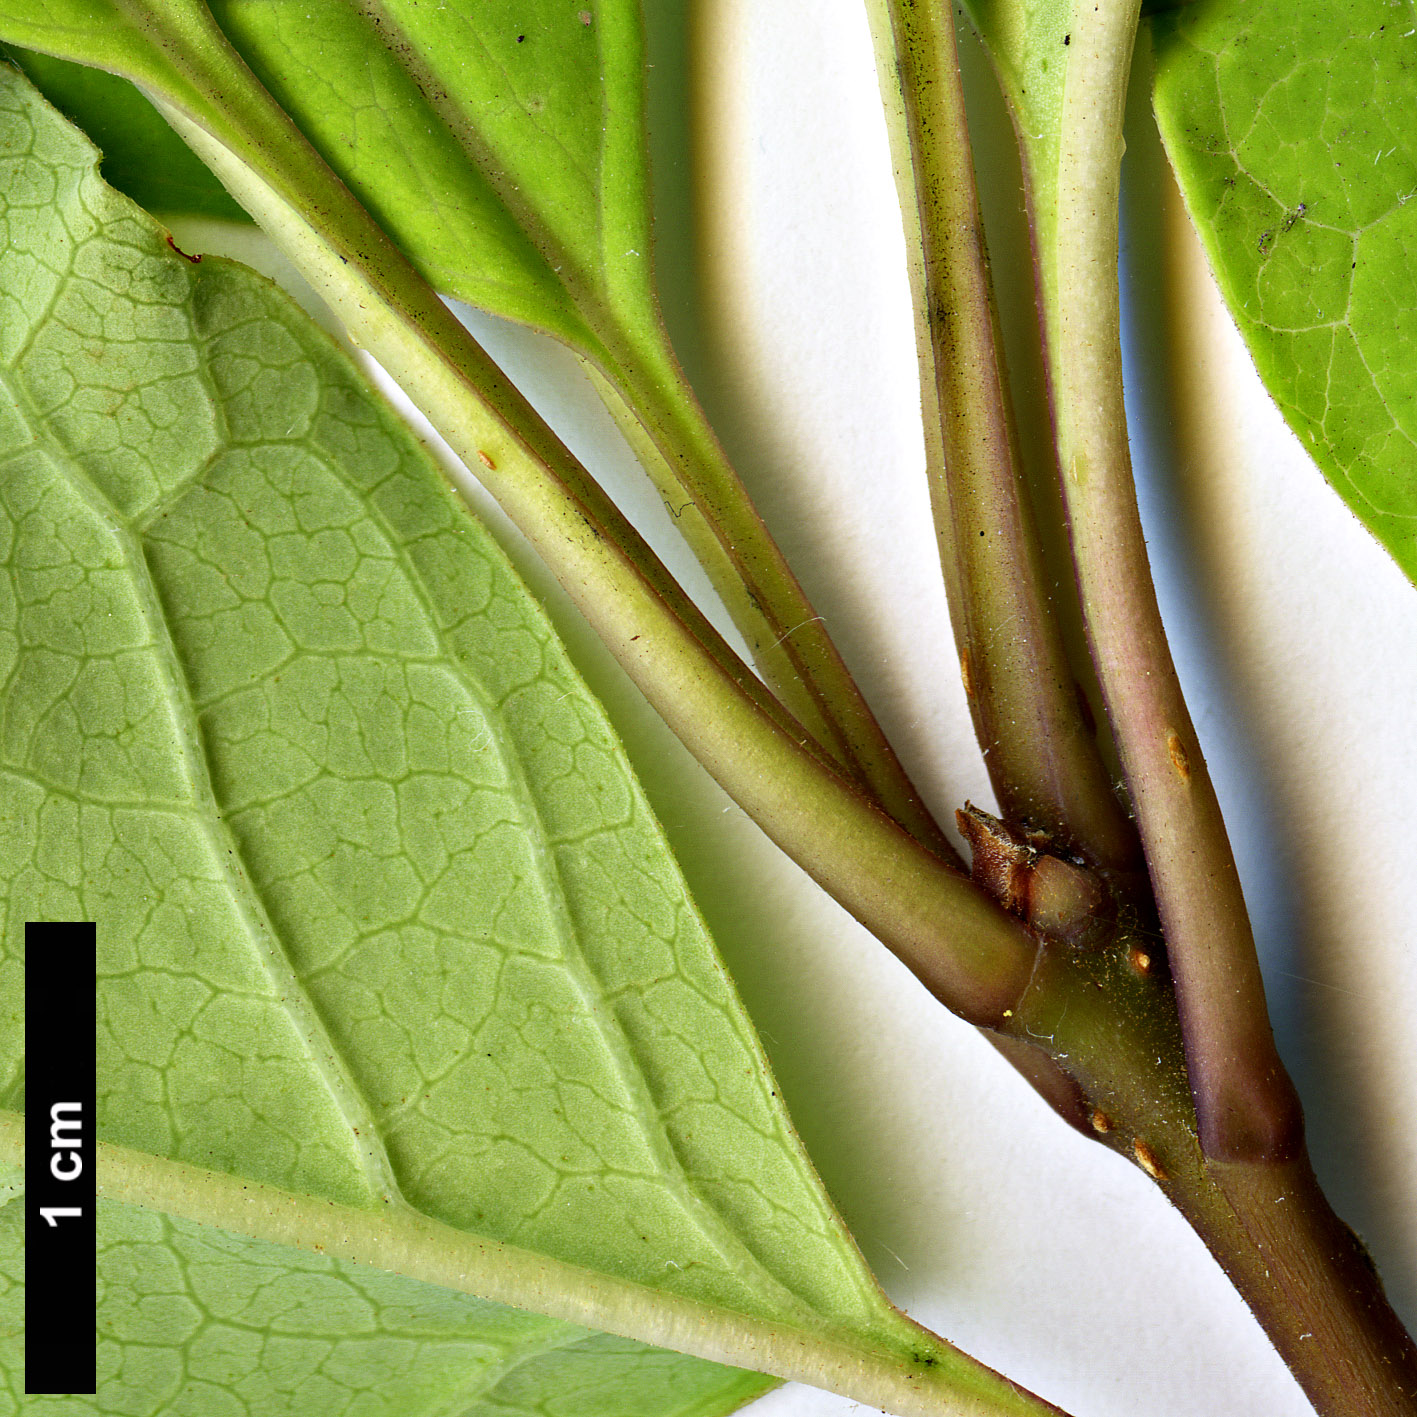 High resolution image: Family: Oleaceae - Genus: Syringa - Taxon: emodi - SpeciesSub: 'Aurea'